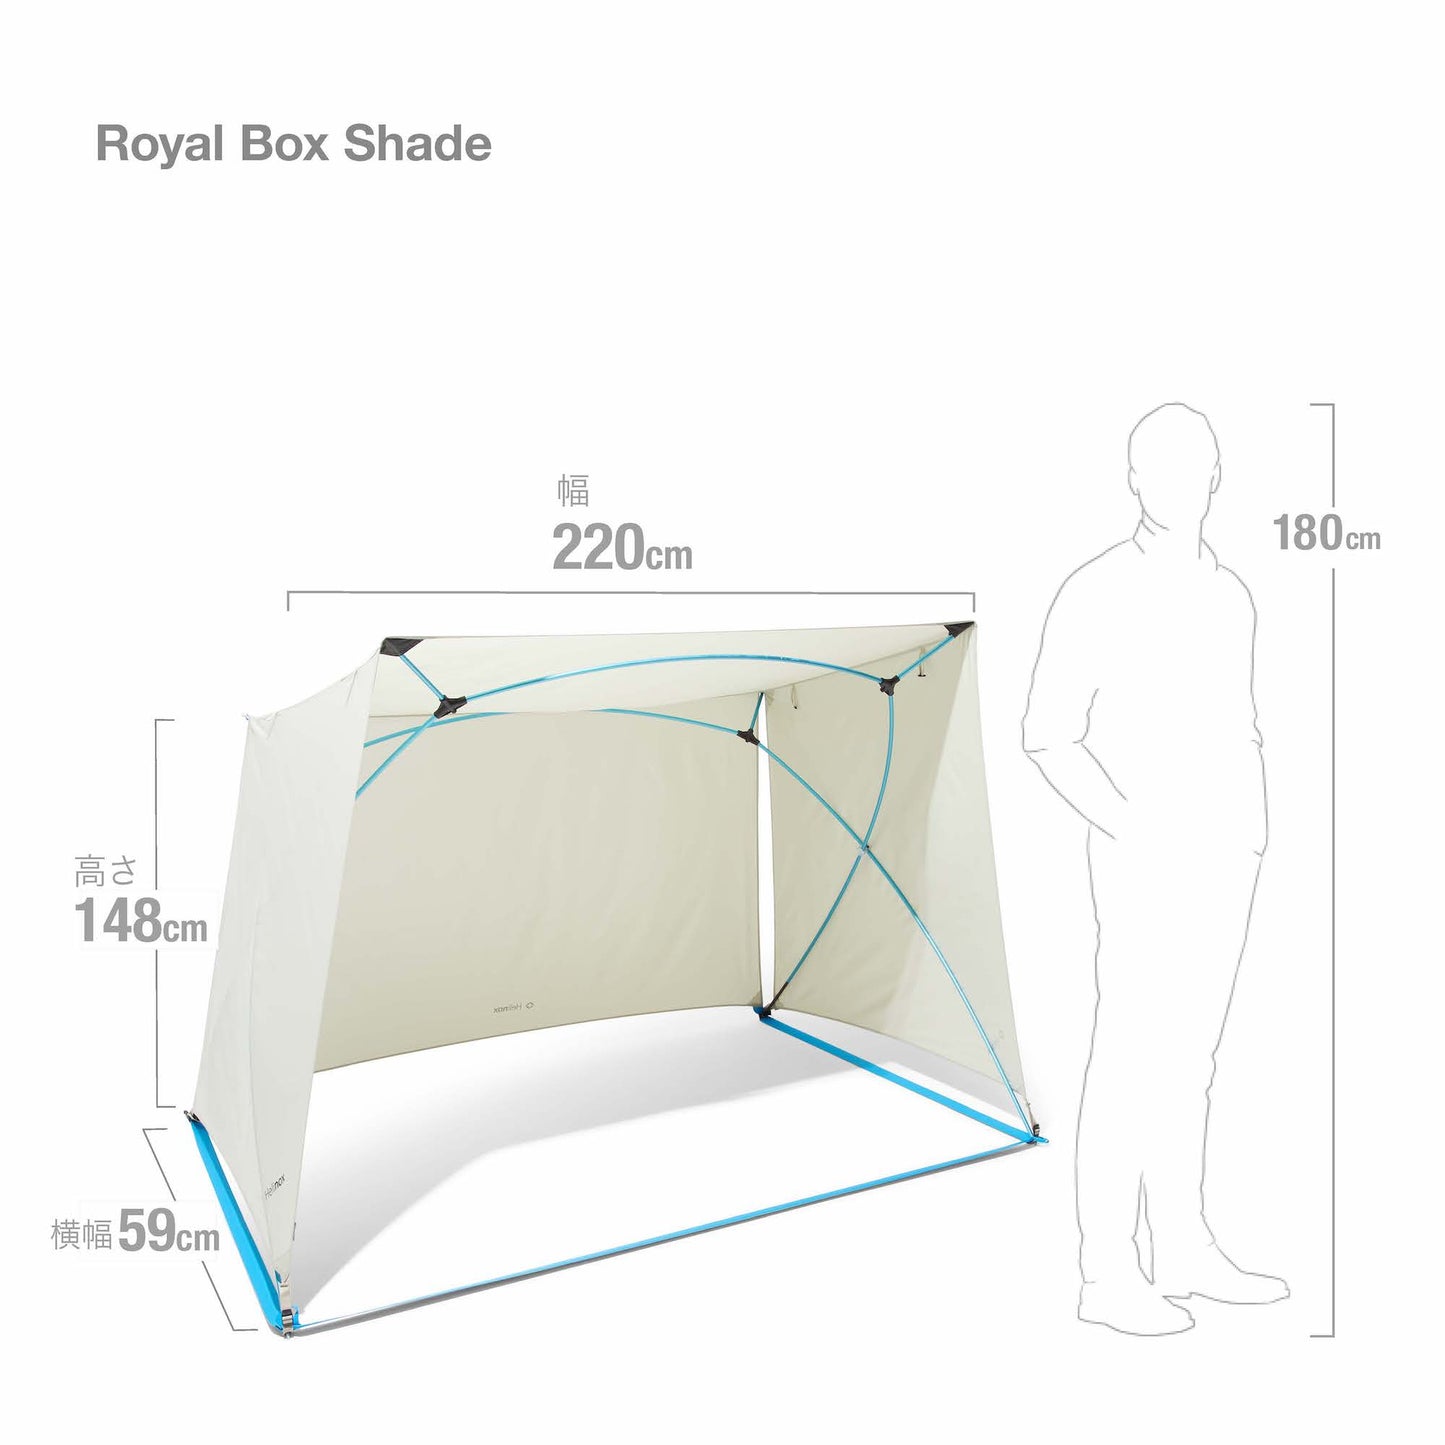 Royal Box Shade - Sand